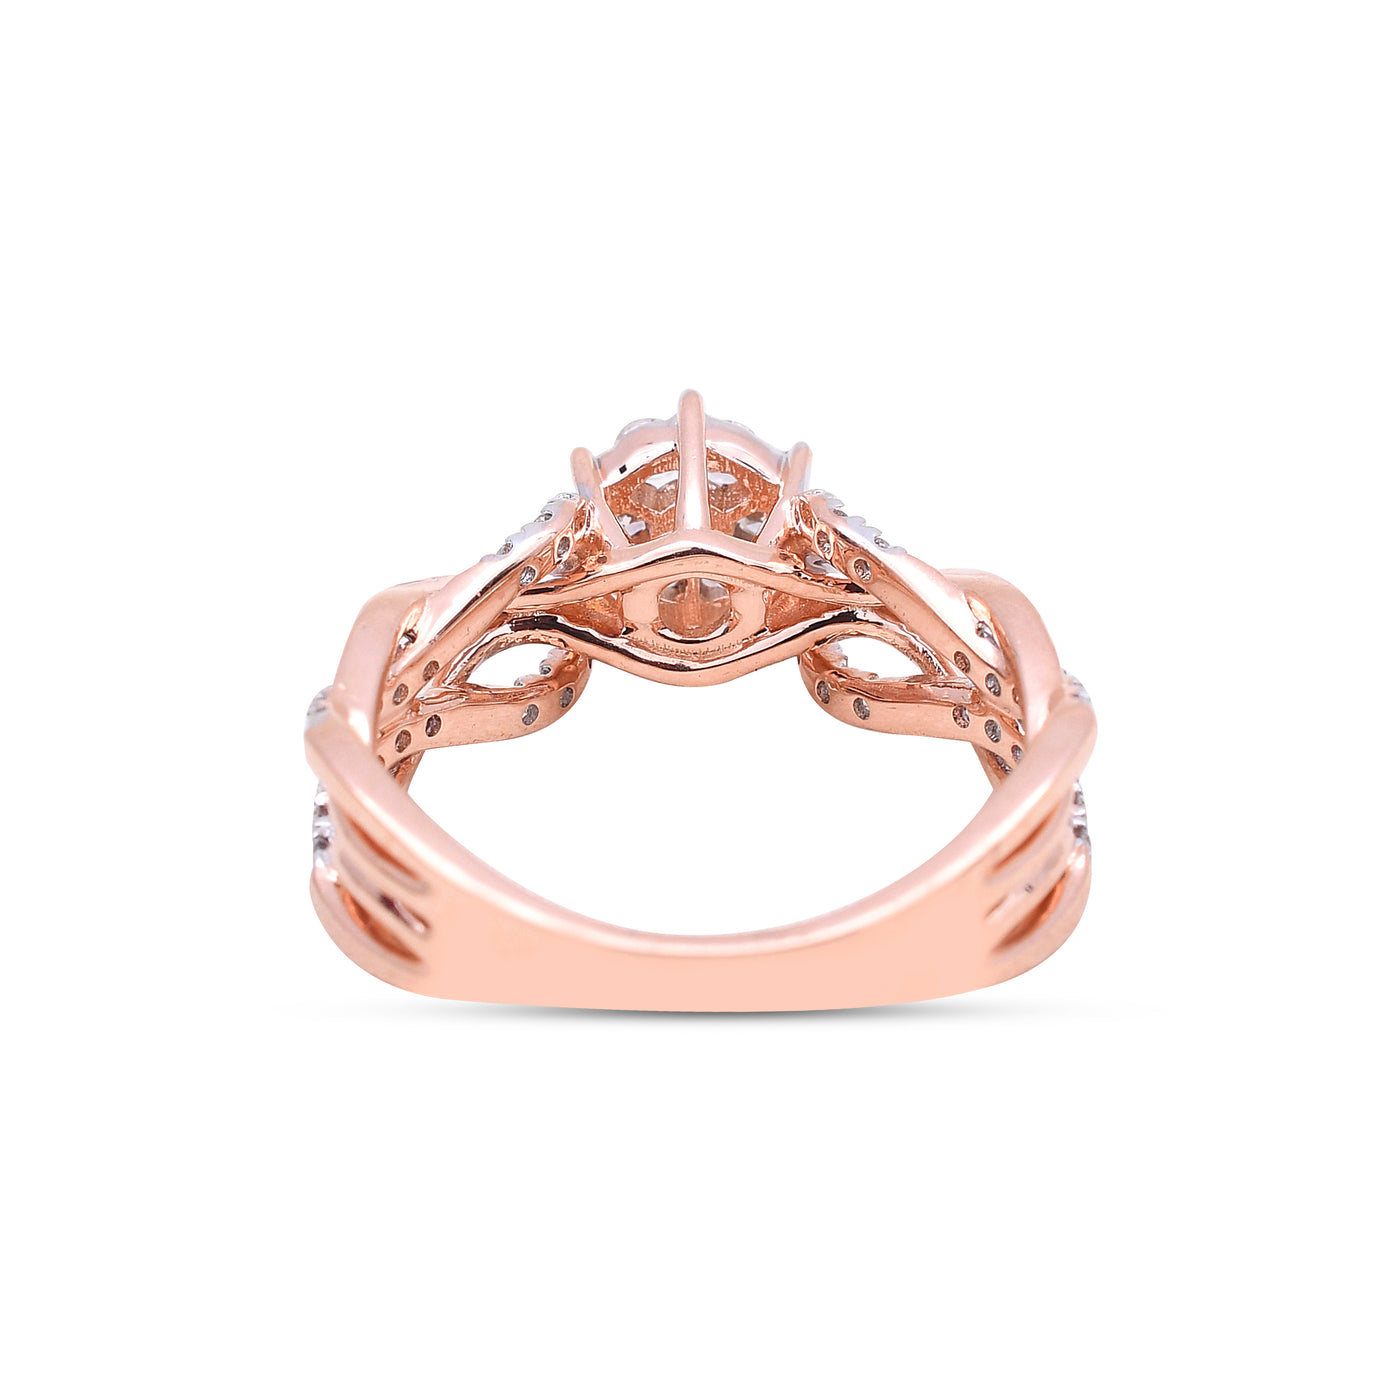 The Tender Rose Diamond Ring